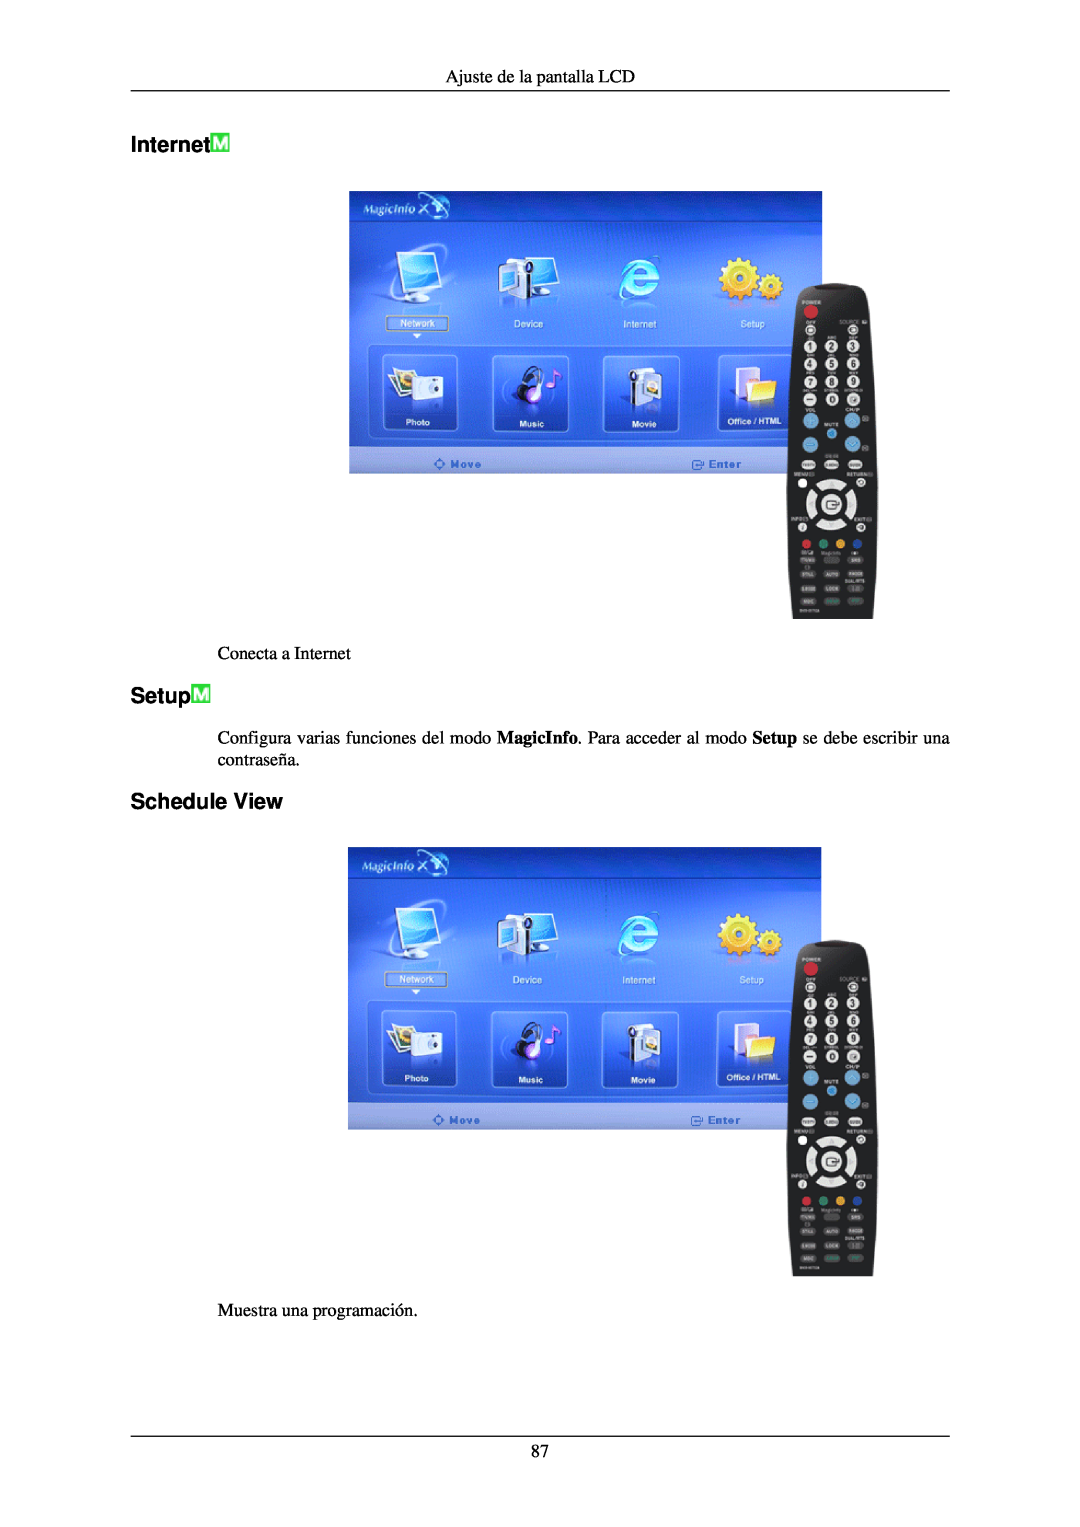 Samsung LH40TCQMBG/EN Setup, Schedule View, Ajuste de la pantalla LCD, Conecta a Internet, Muestra una programación 